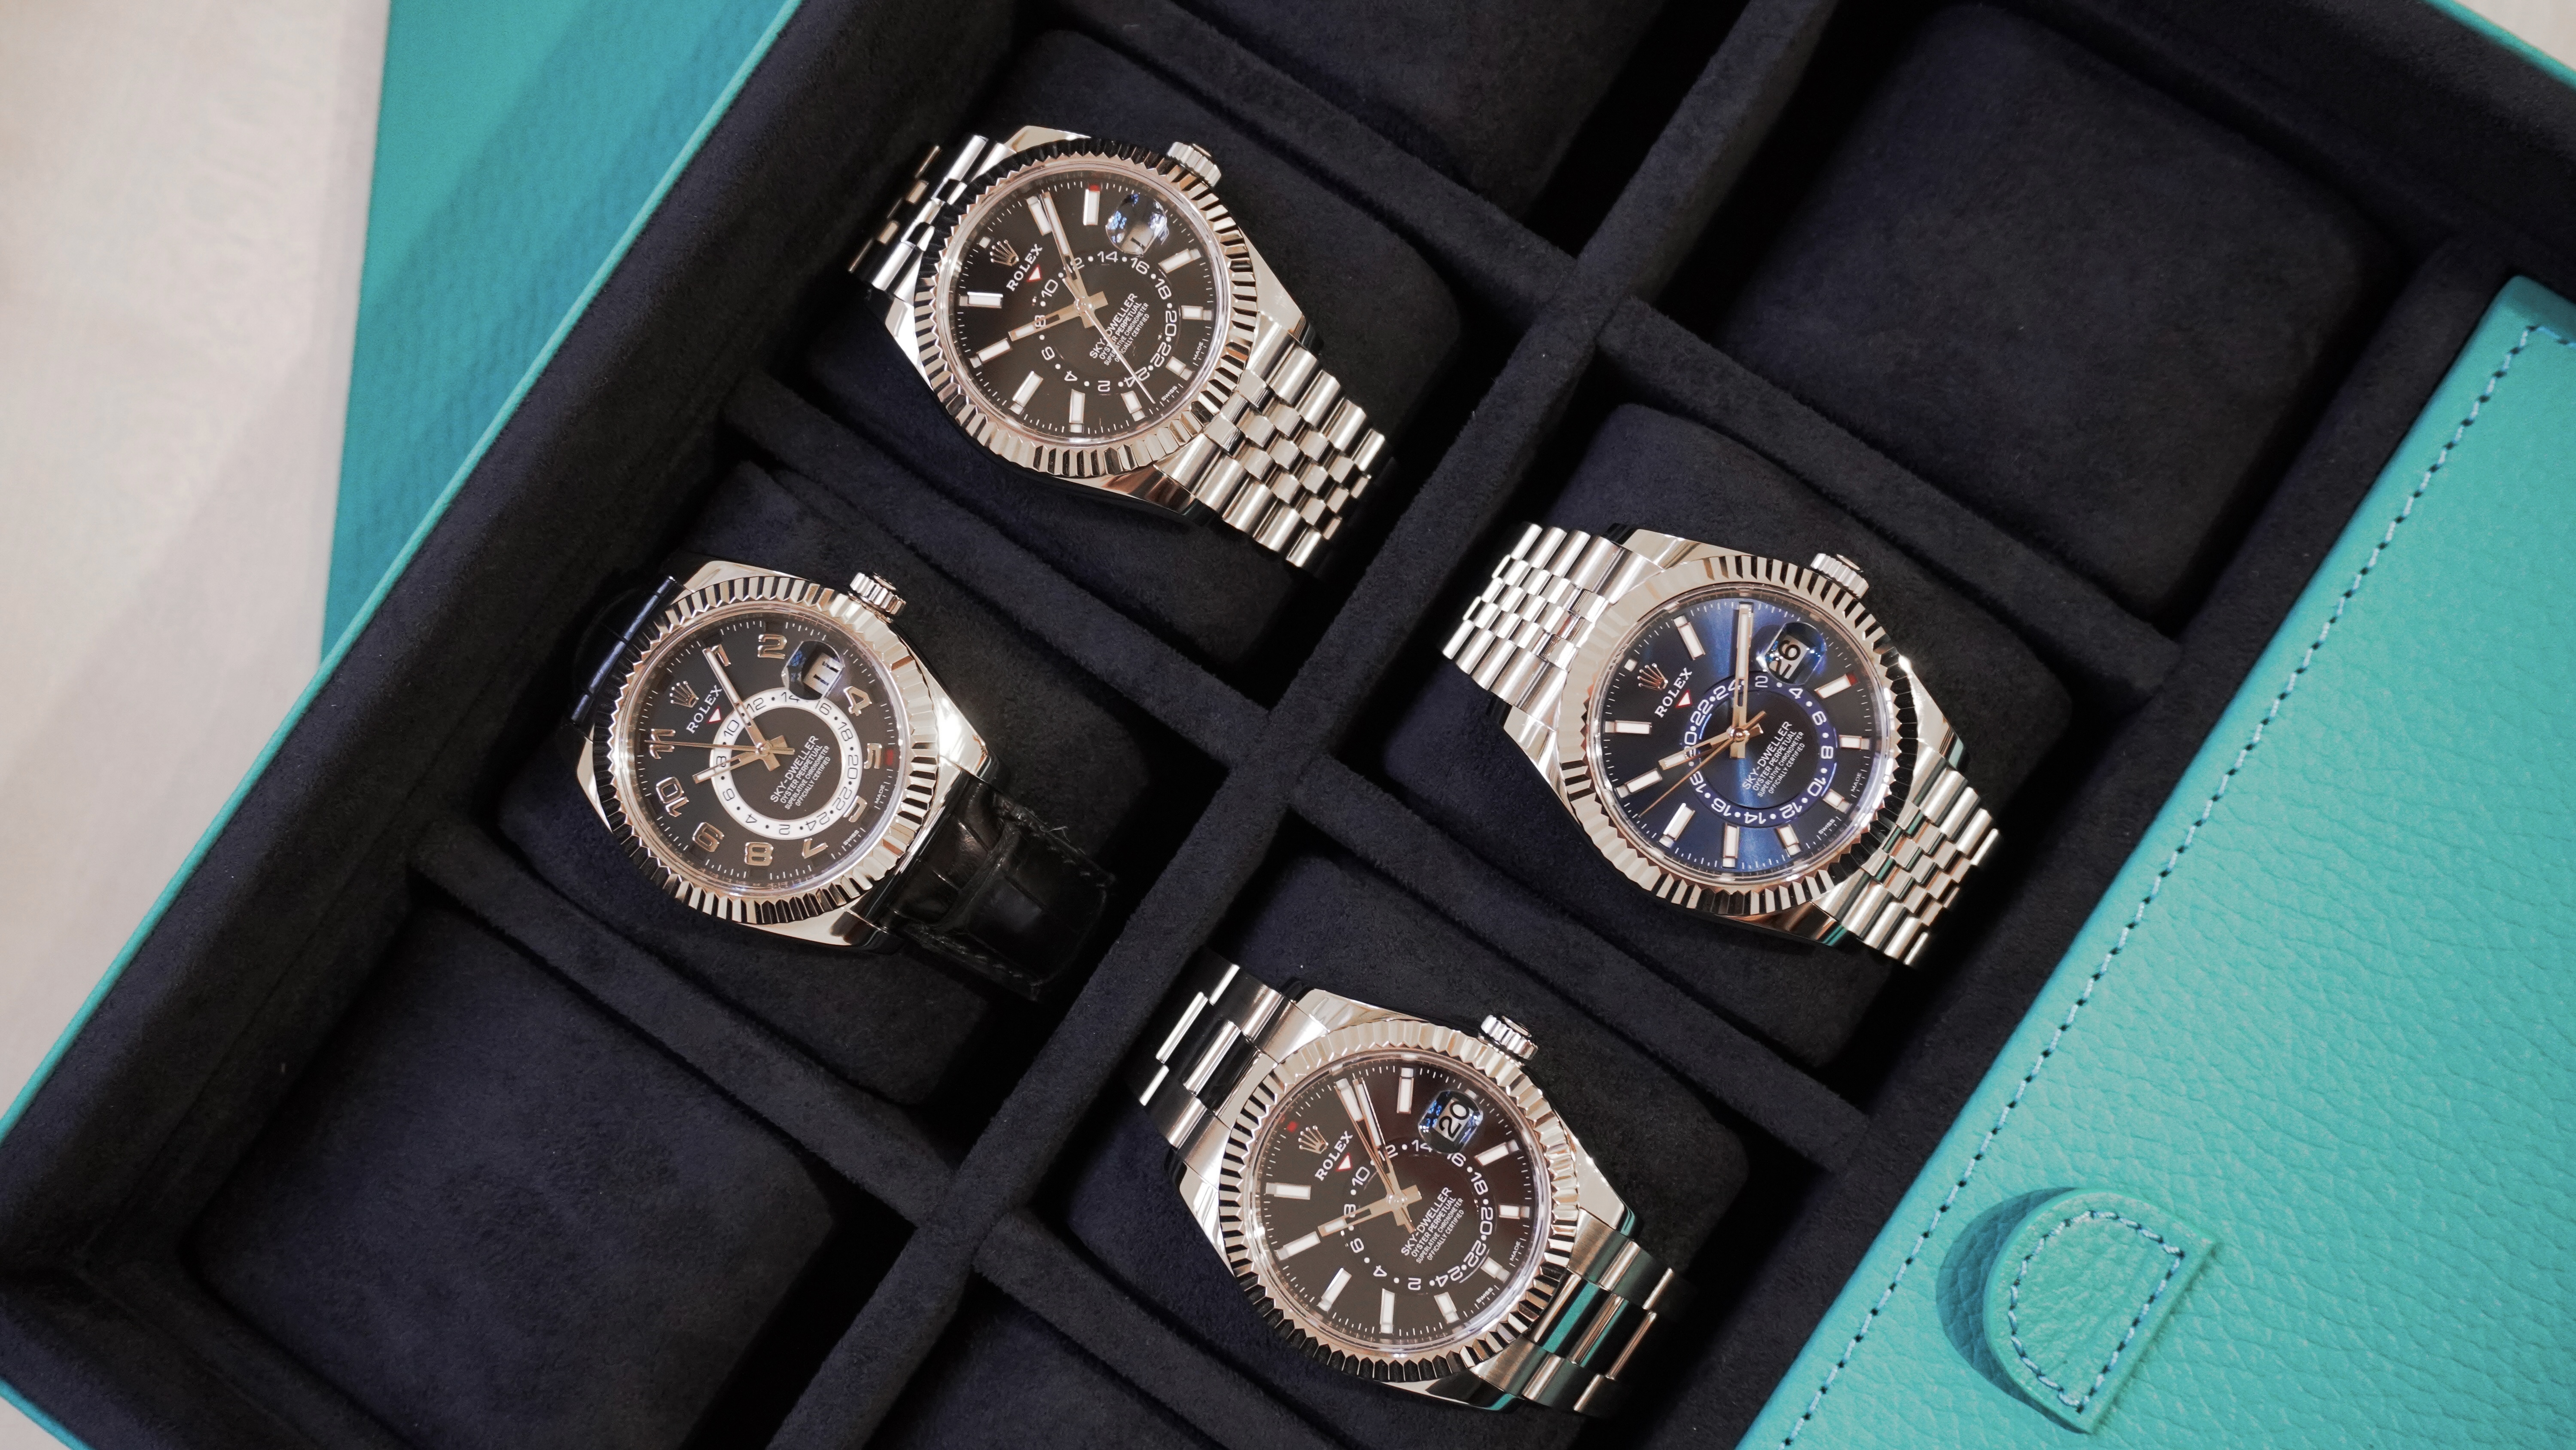  Gen Z's Luxury Watch Interest: Watchfinder & Co Insights